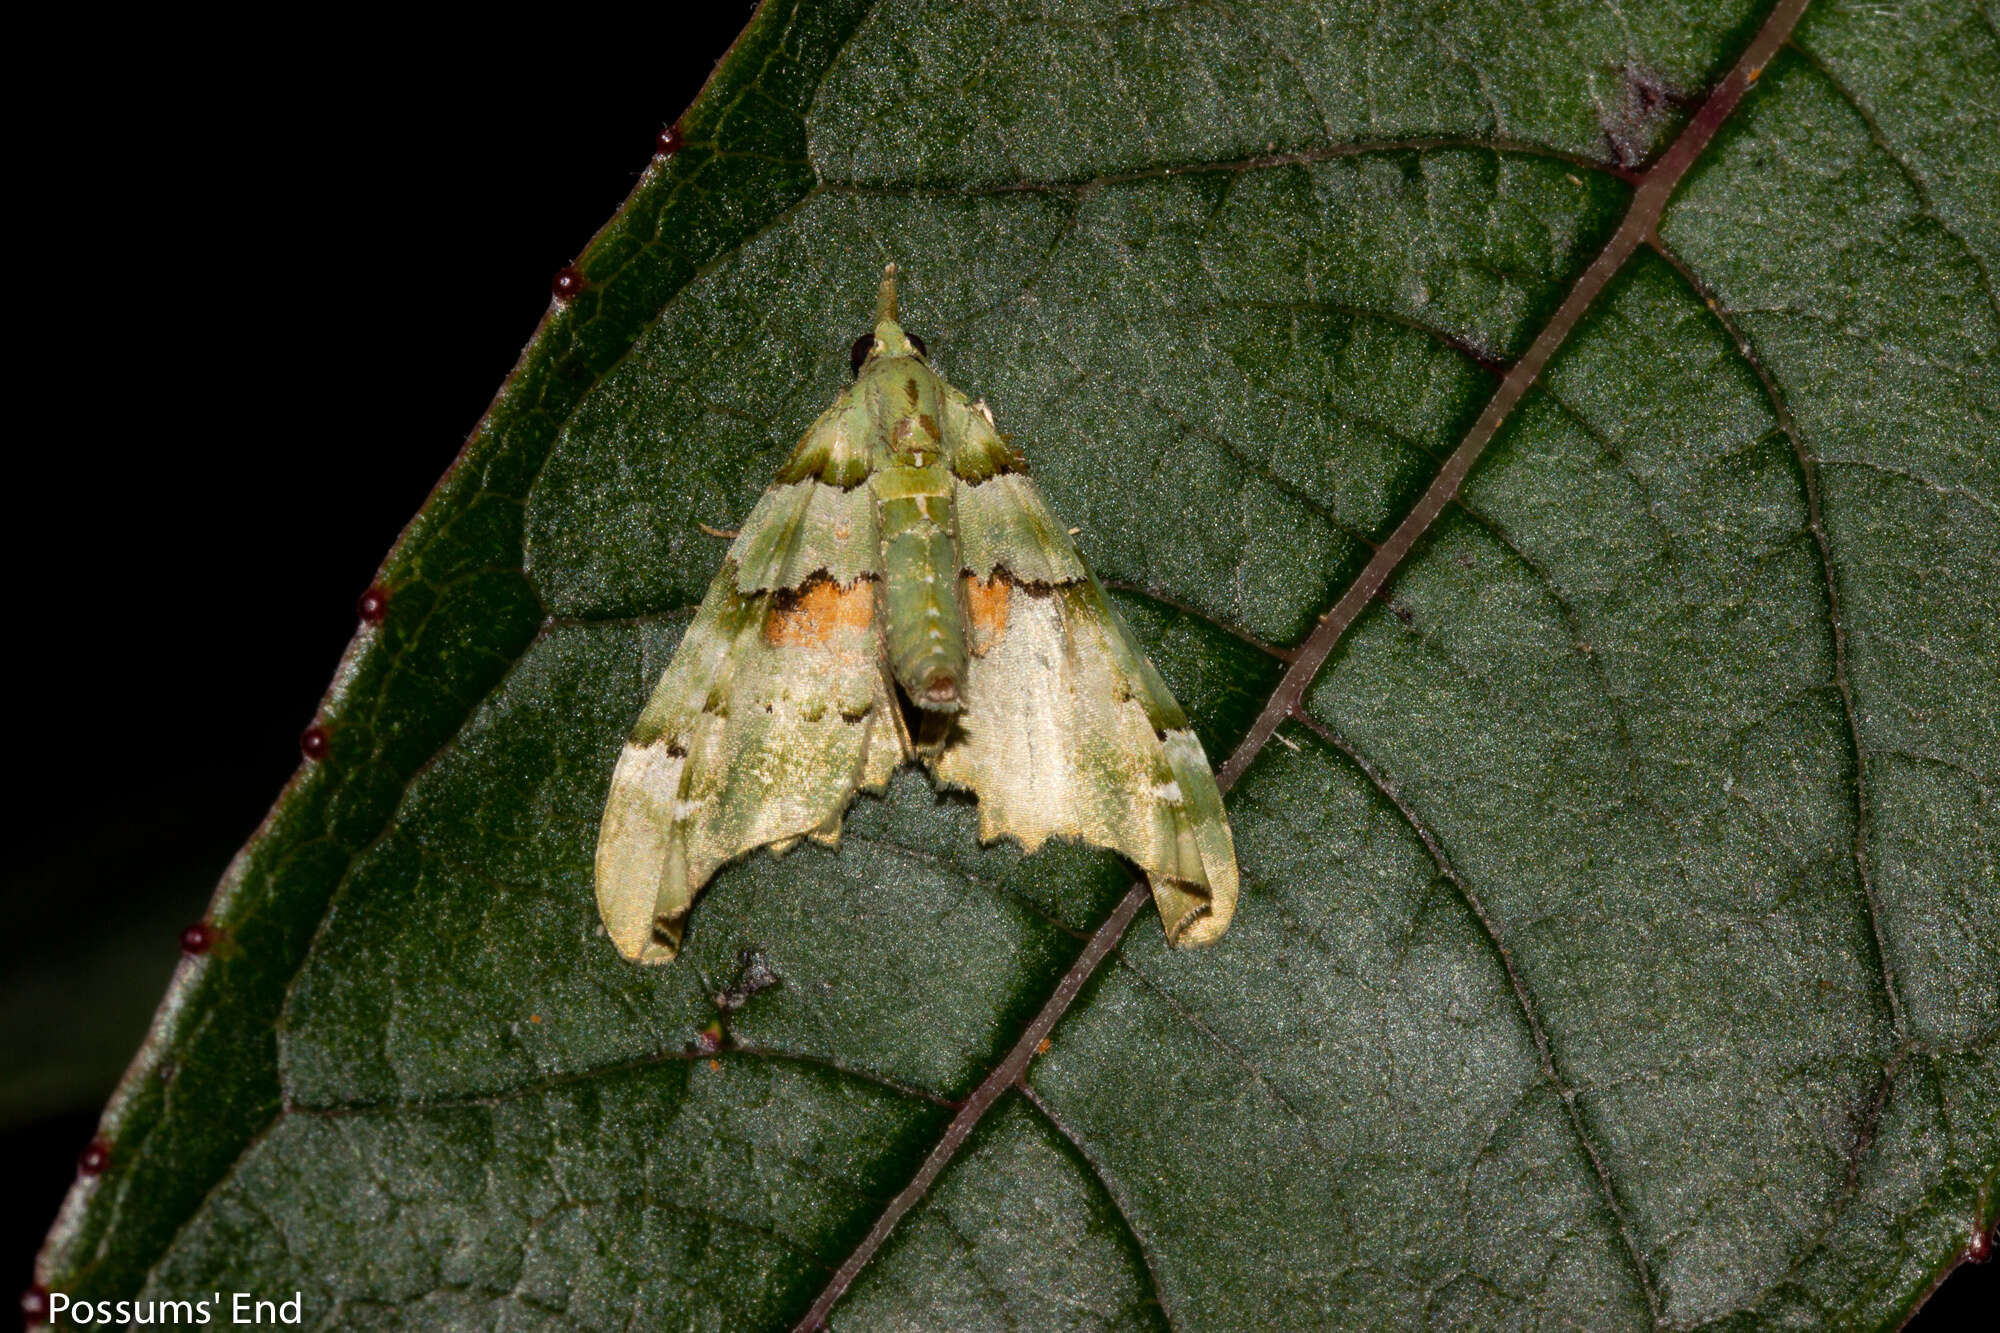 Image of Lawyer pug moth